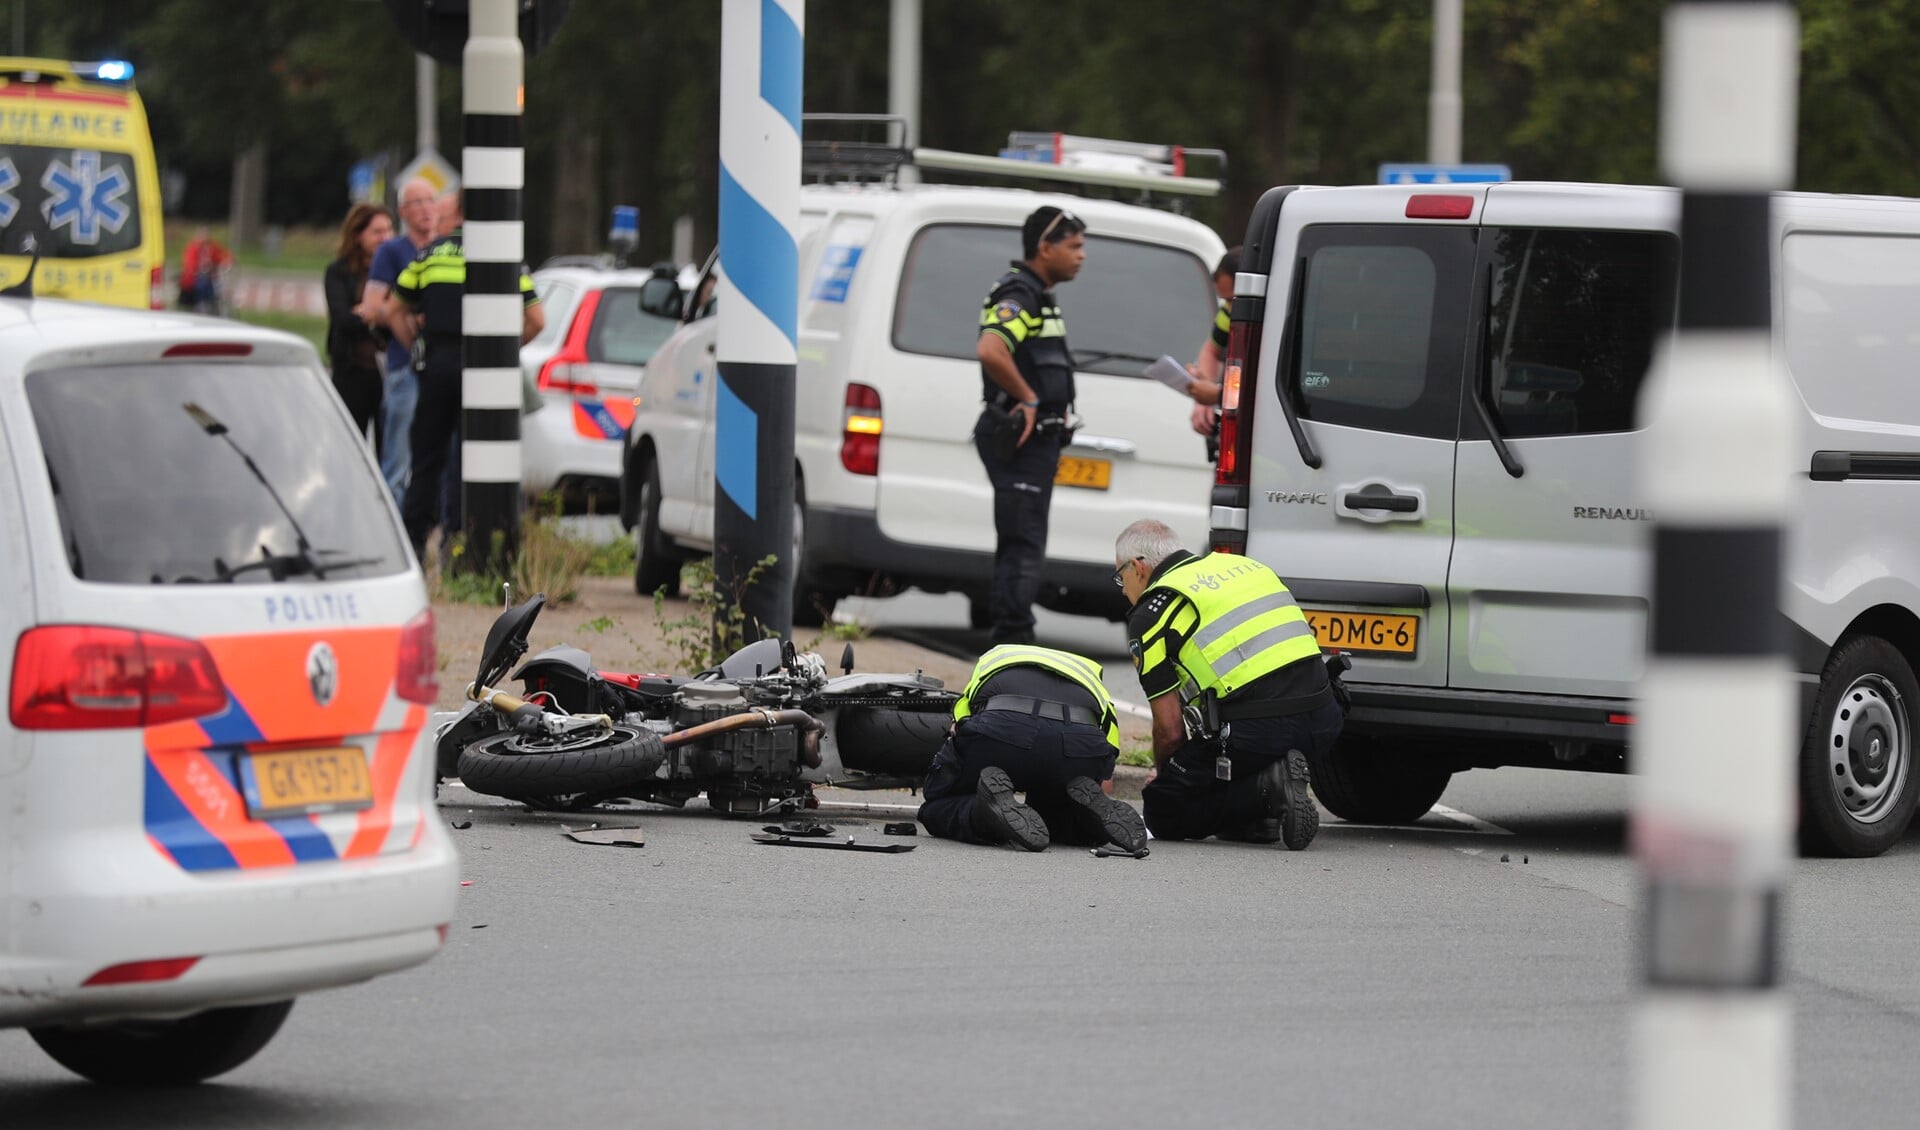 De politie doet onderzoek naar de toedracht van het ongeval. (Foto: Regio15/René Hendriks)